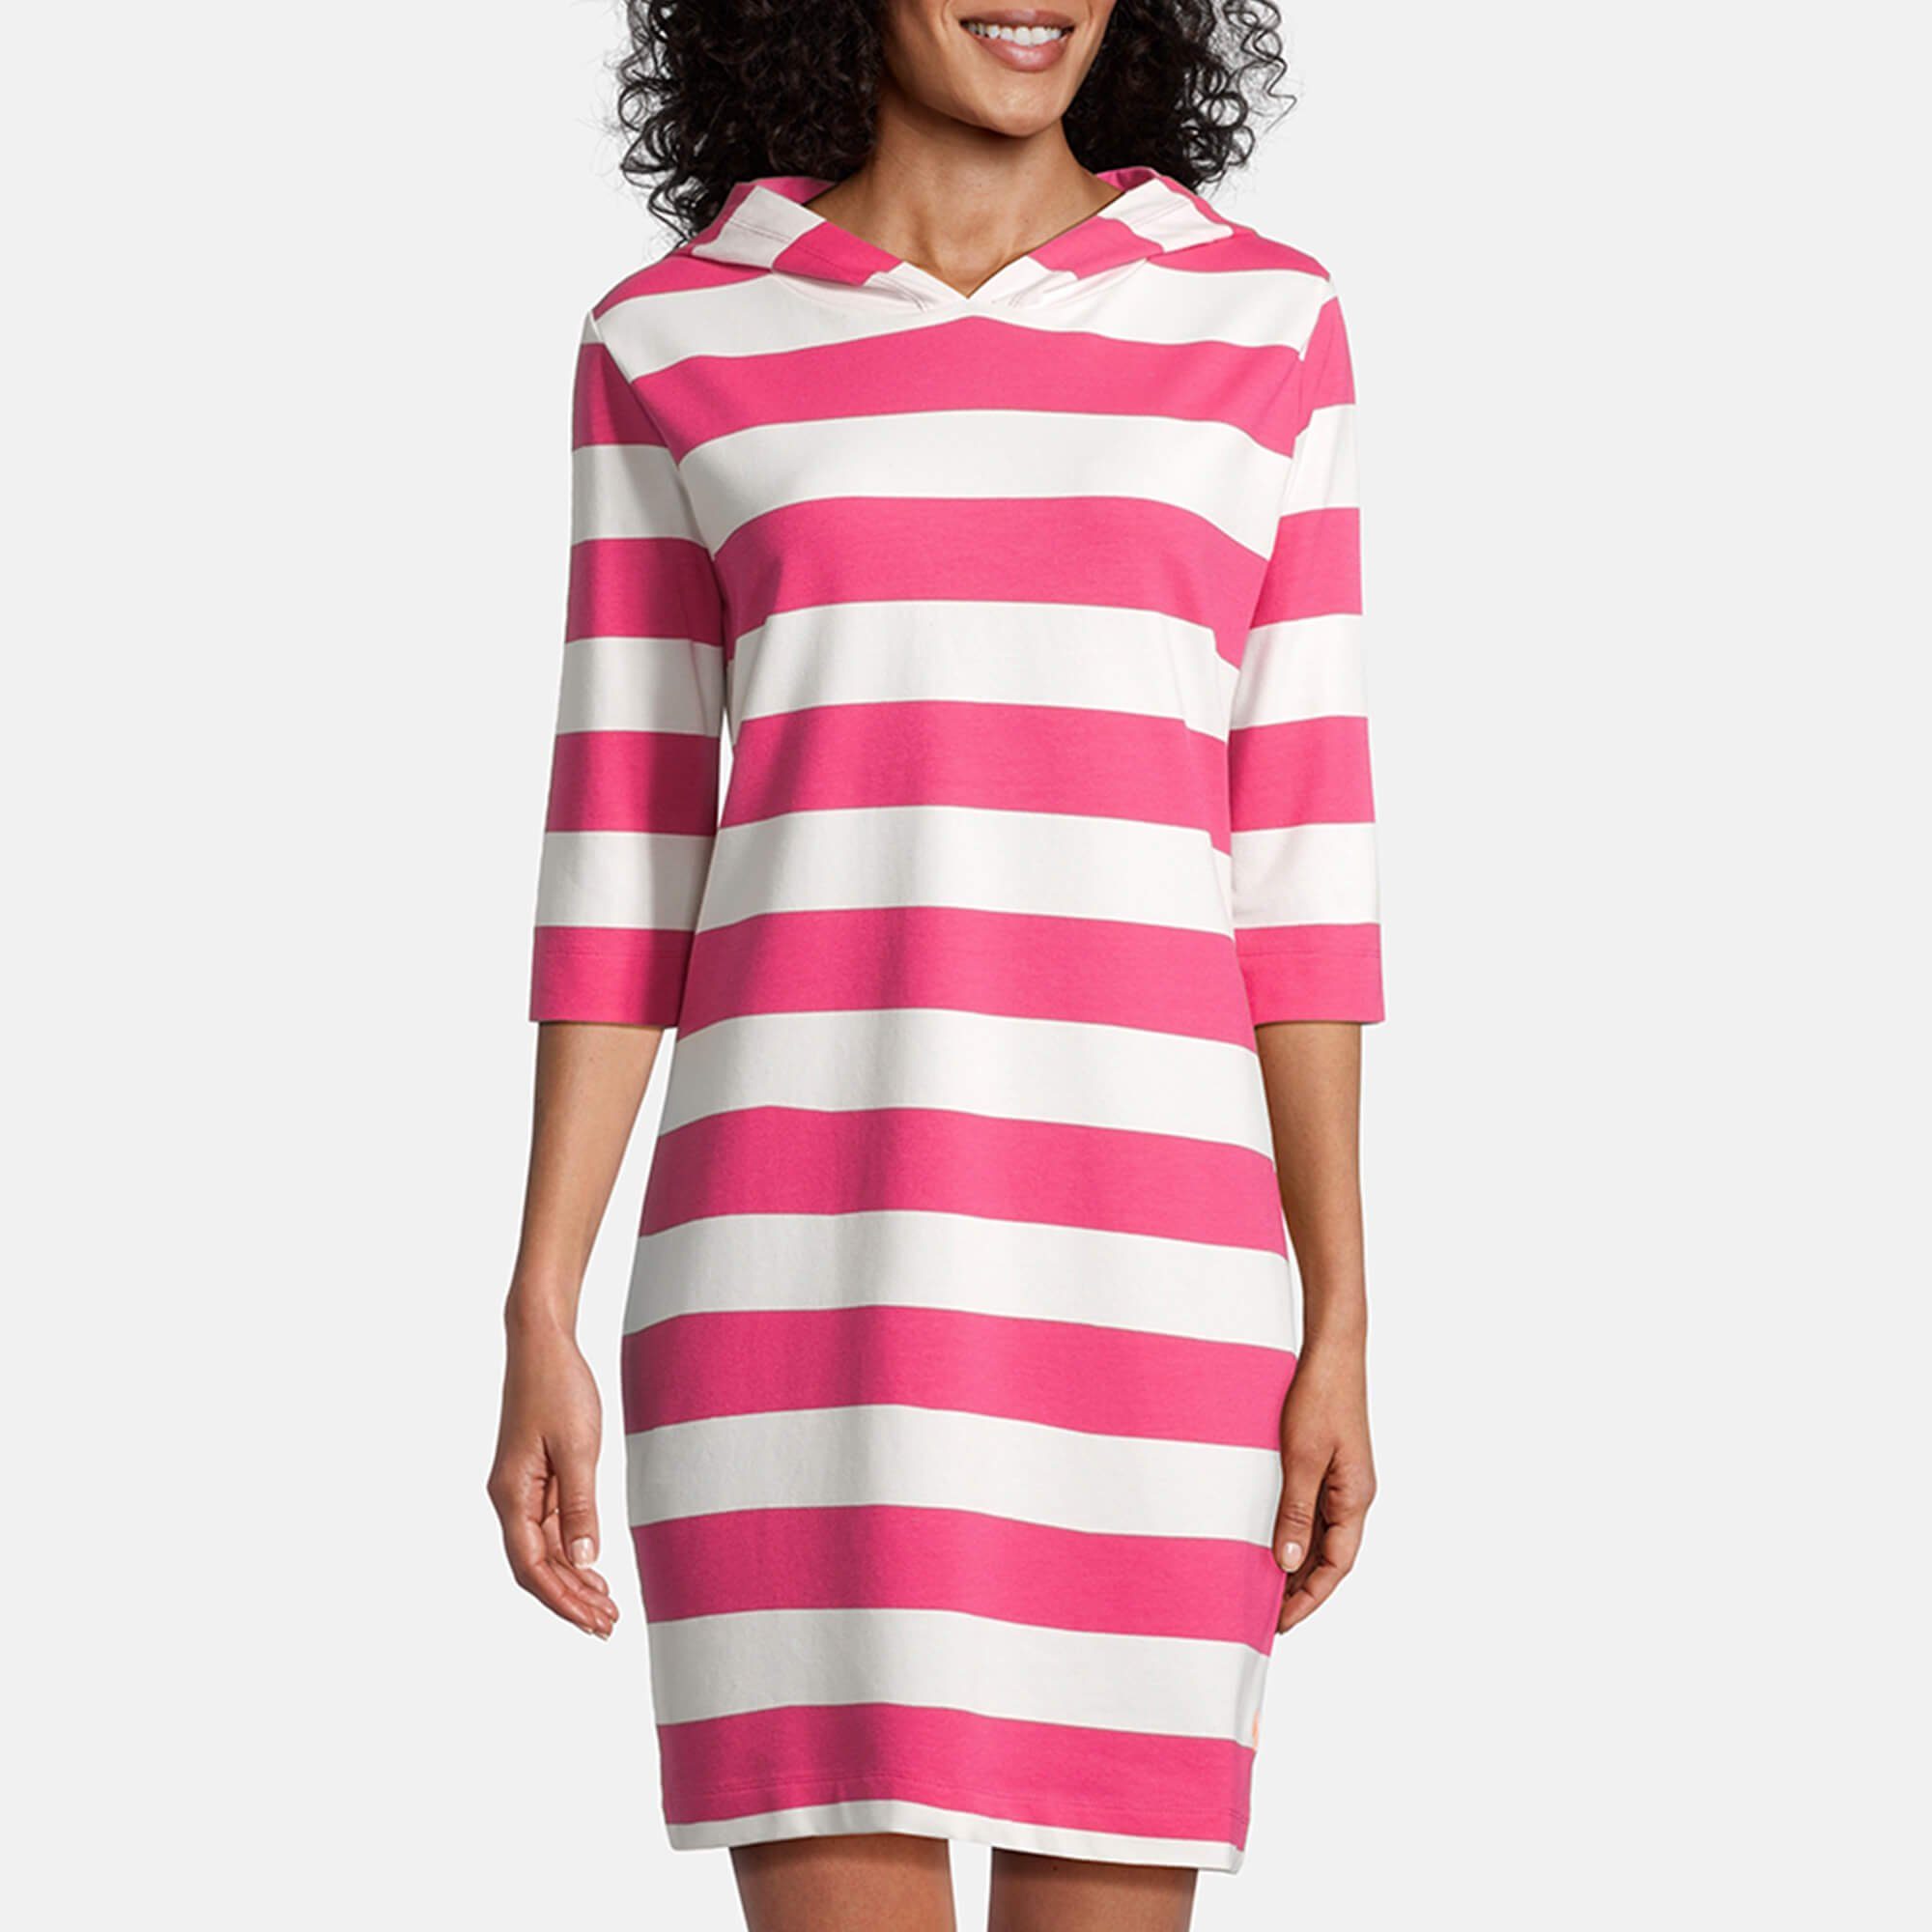 salzhaut Shirtkleid Damen Kapuzenkleid Hoodie-Kleid 3/4-Arm offwhite pink Block-Streifen / Löövstick